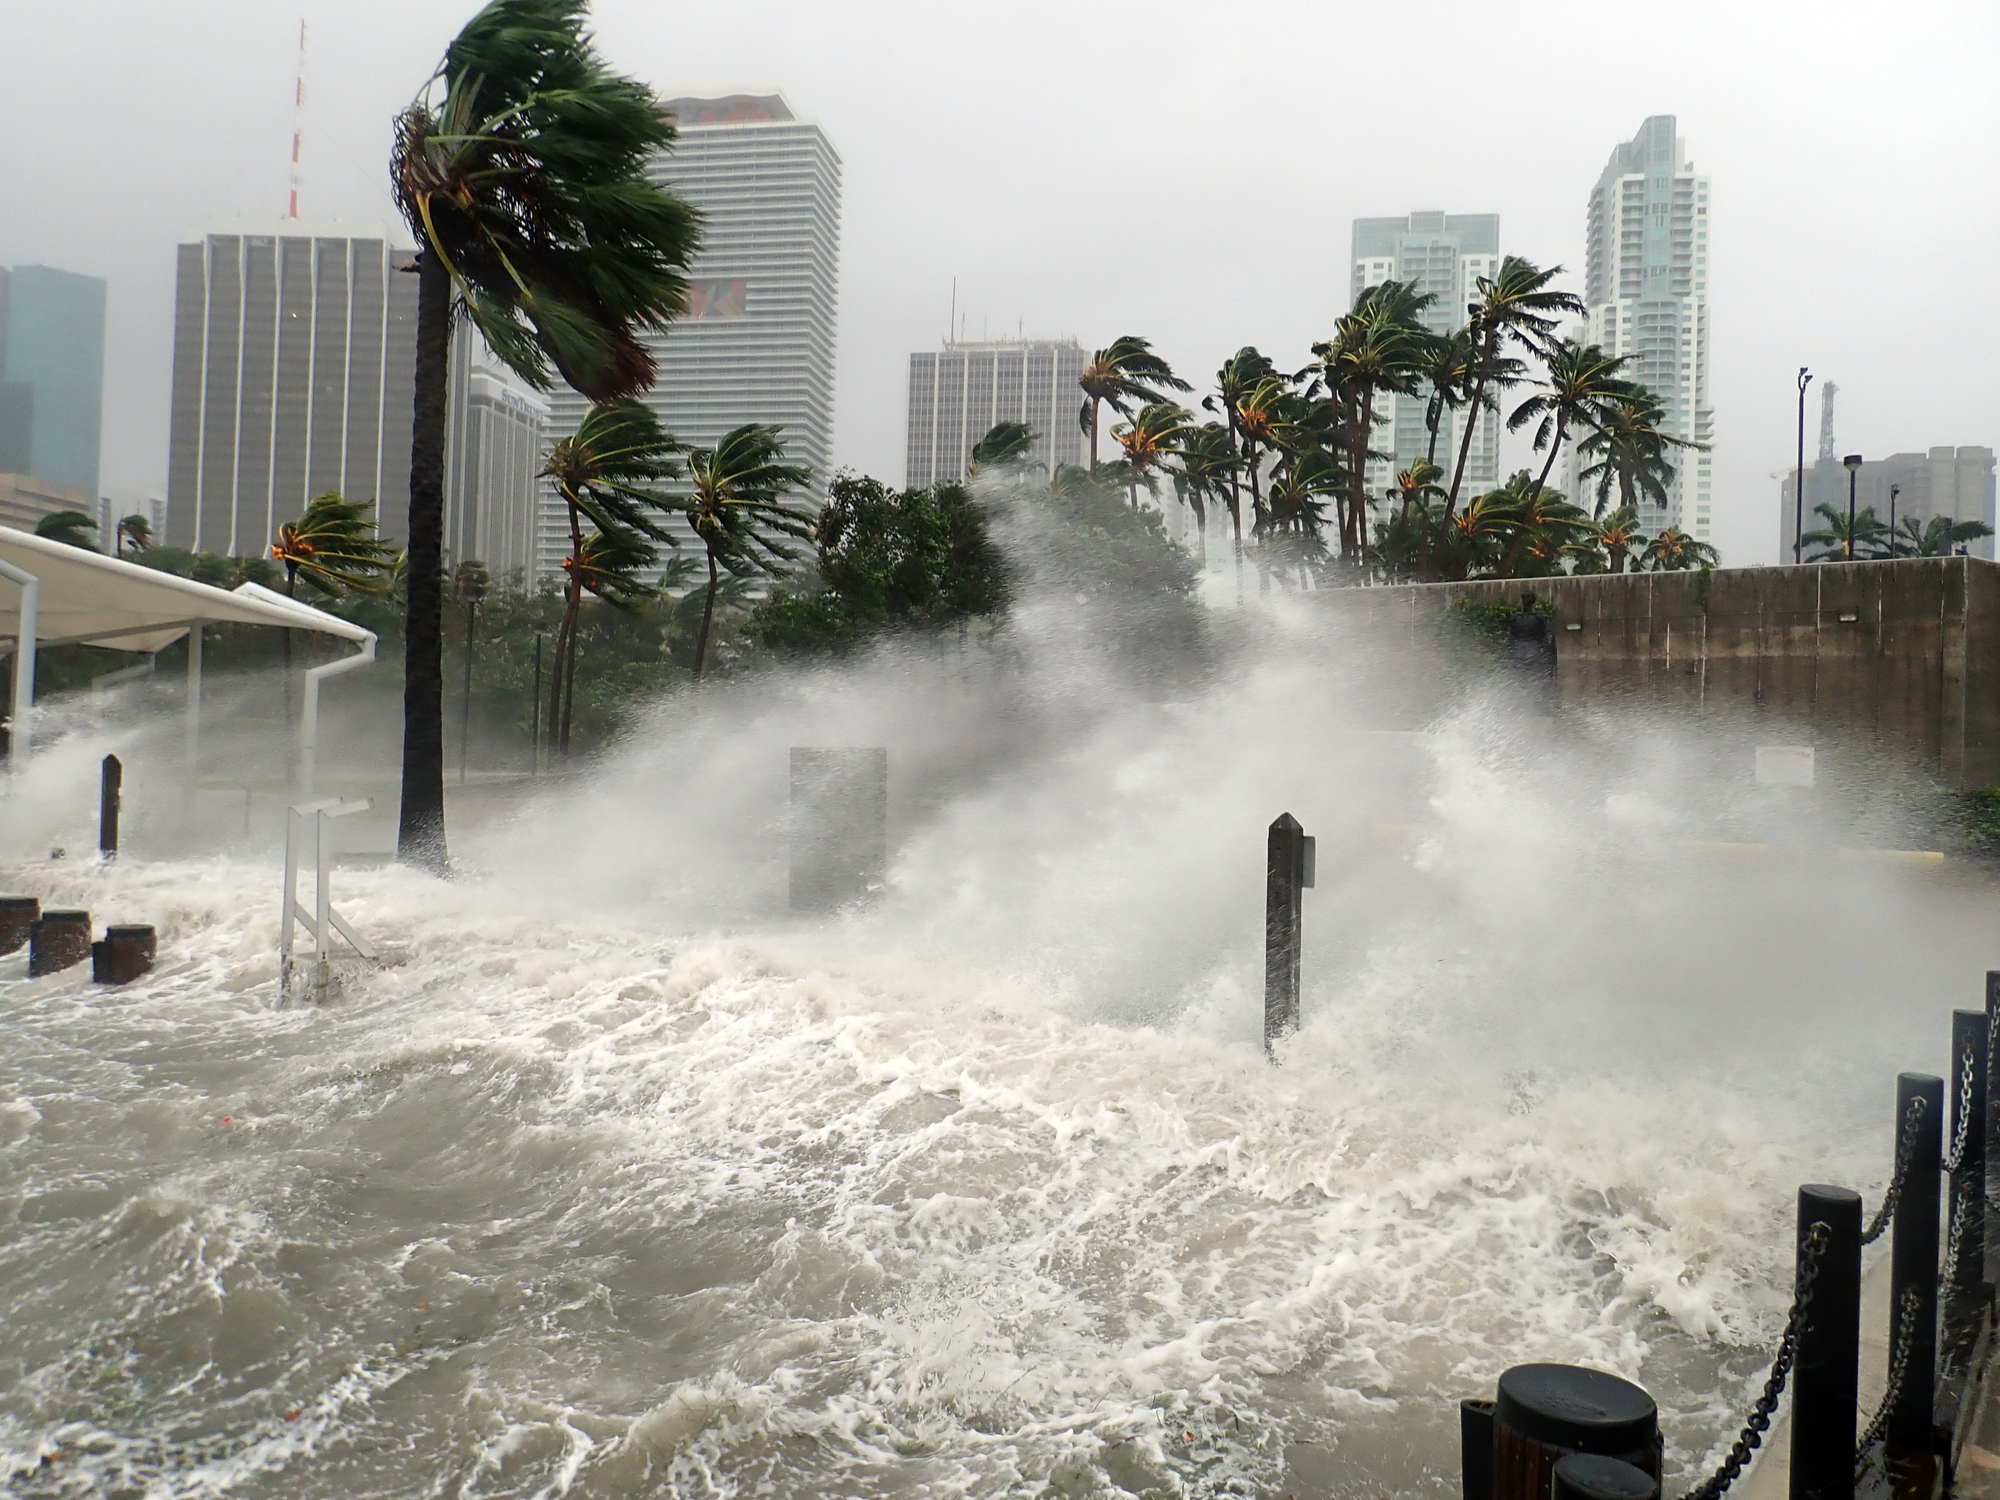 L'ouragan Irma, qui a frappé la ville de Miami en Floride en 2017, était classé en catégorie 5, soit le niveau le plus élevé sur l'échelle de Saffir-Simpson. Getty Images / Warren Faidley